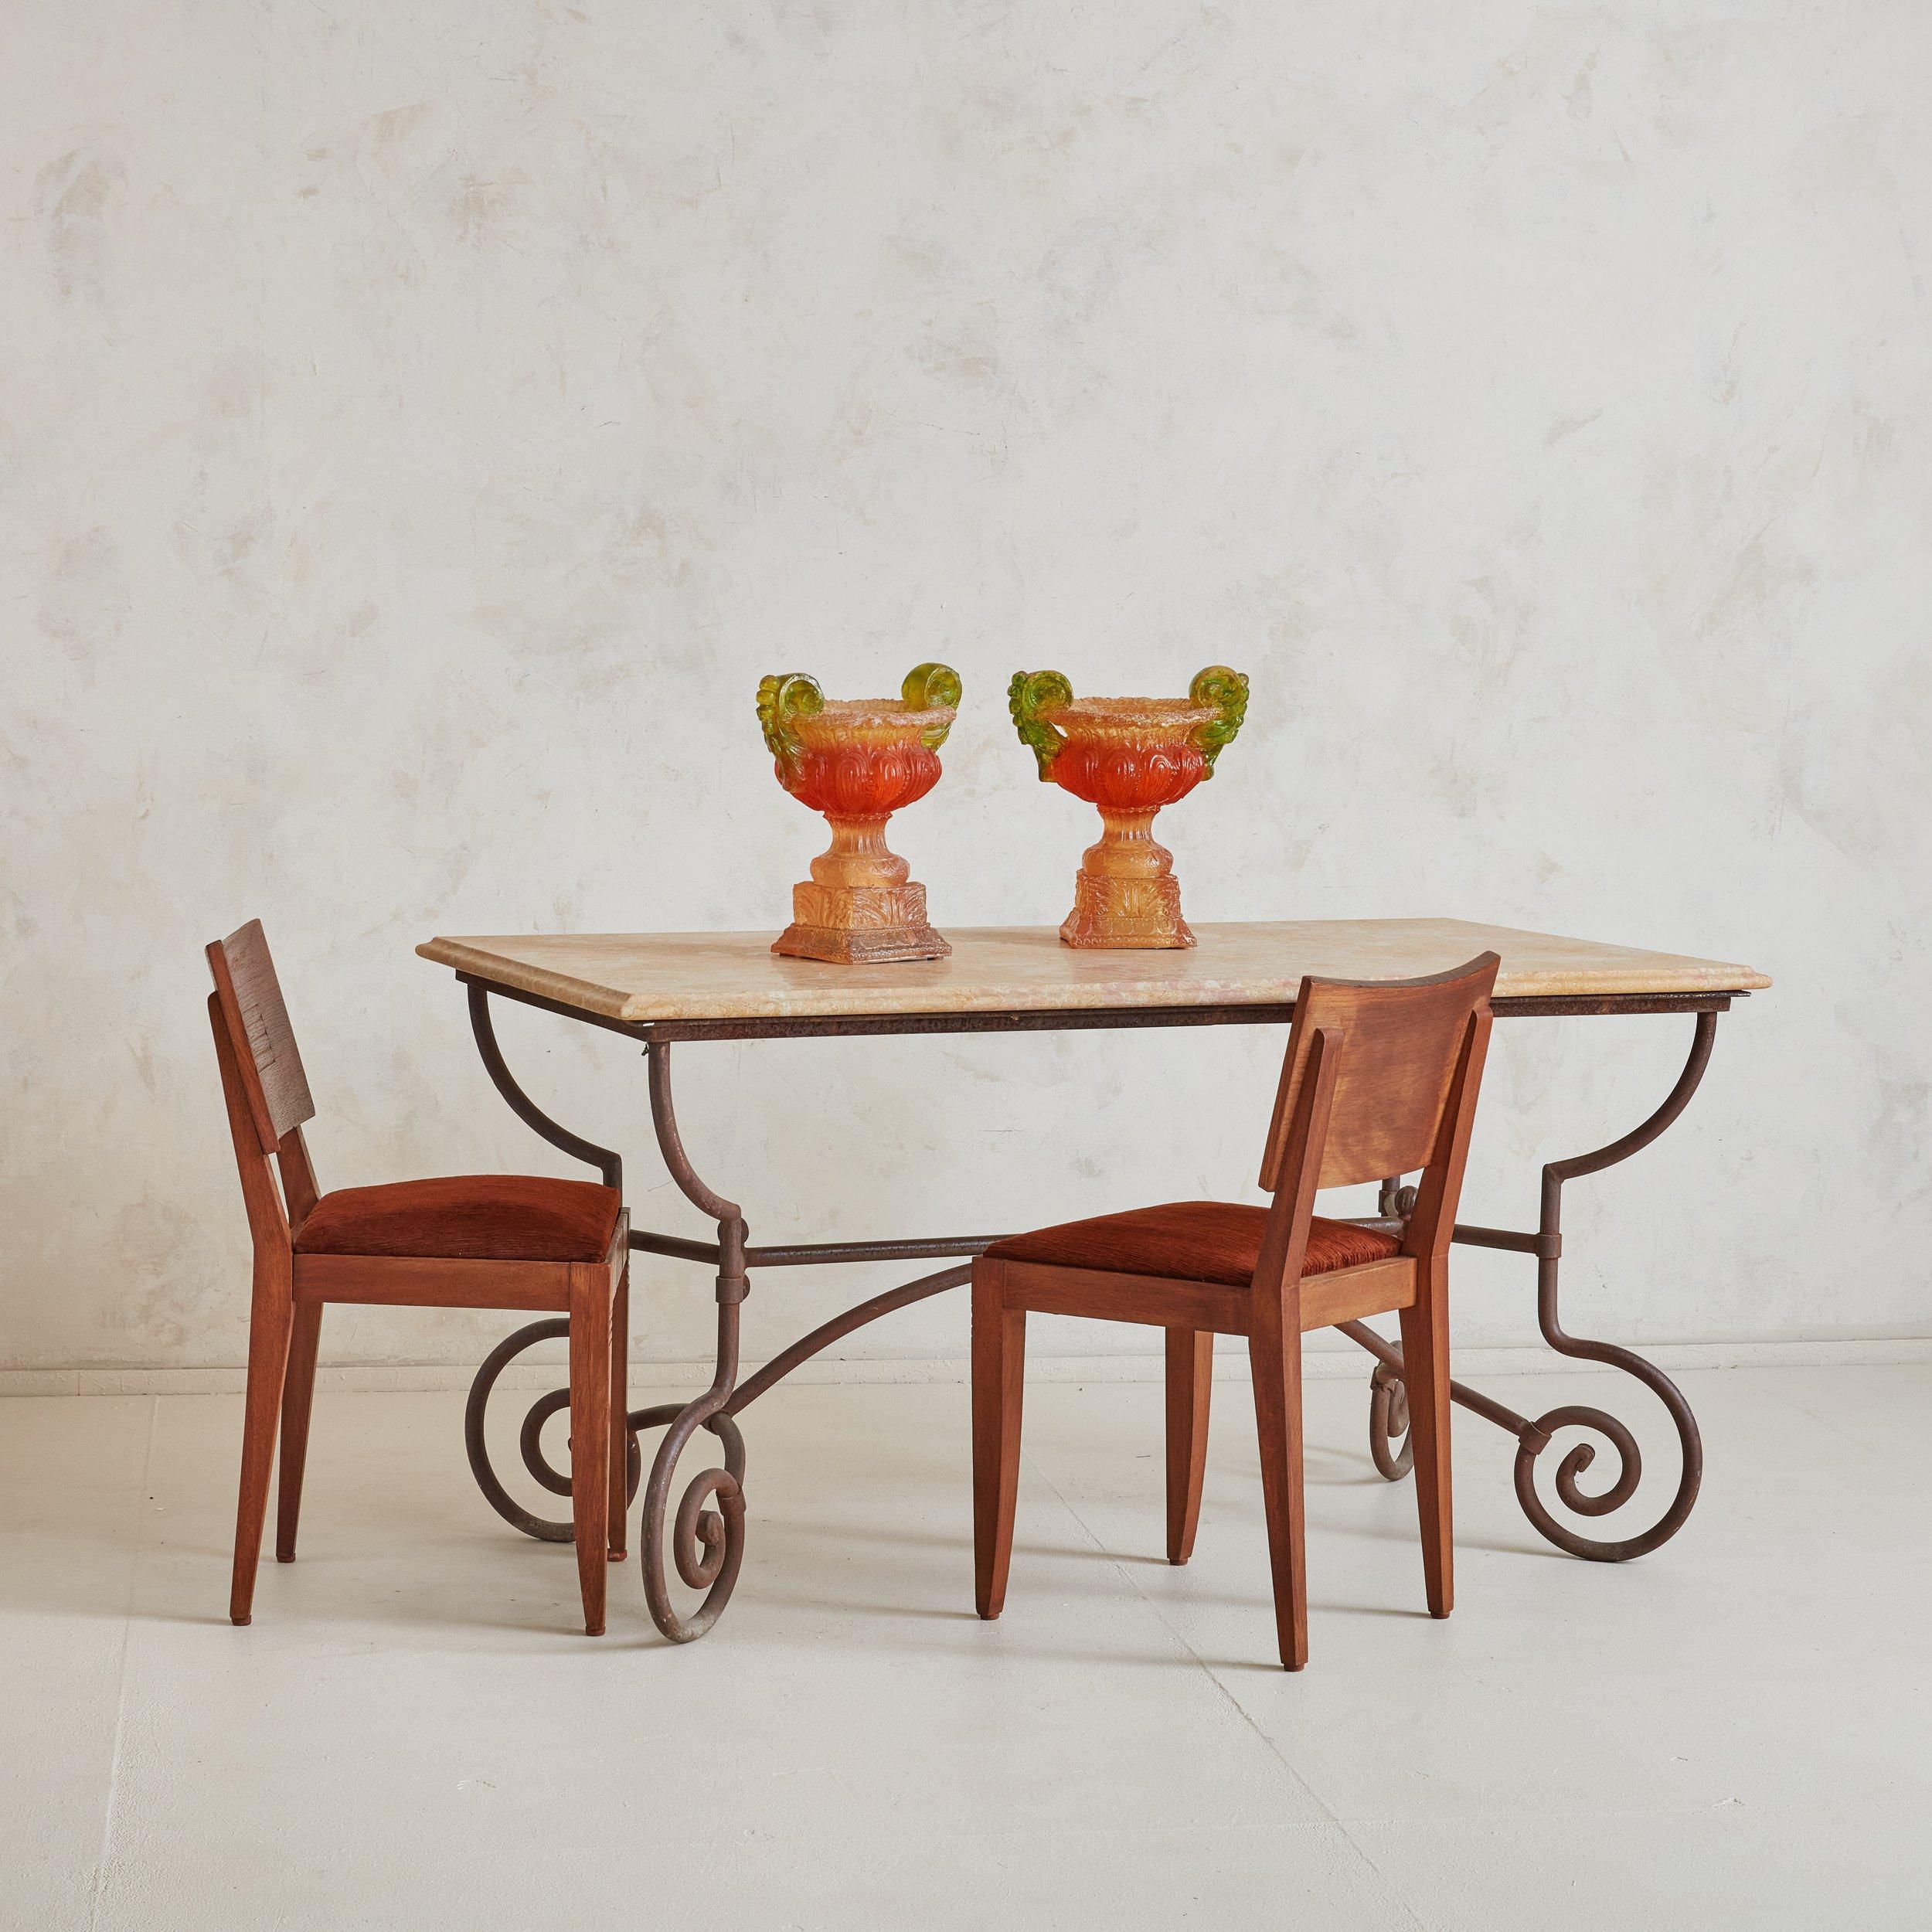 Ein prächtiger und klassischer Esstisch oder Beistelltisch aus Südfrankreich. Die Basis aus Schmiedeeisen ist eines unserer bevorzugten MATERIALIEN, und dieser Tisch hat eine wunderschön geschmiedete, gebogene Basis. Die Marmorplatte haben wir